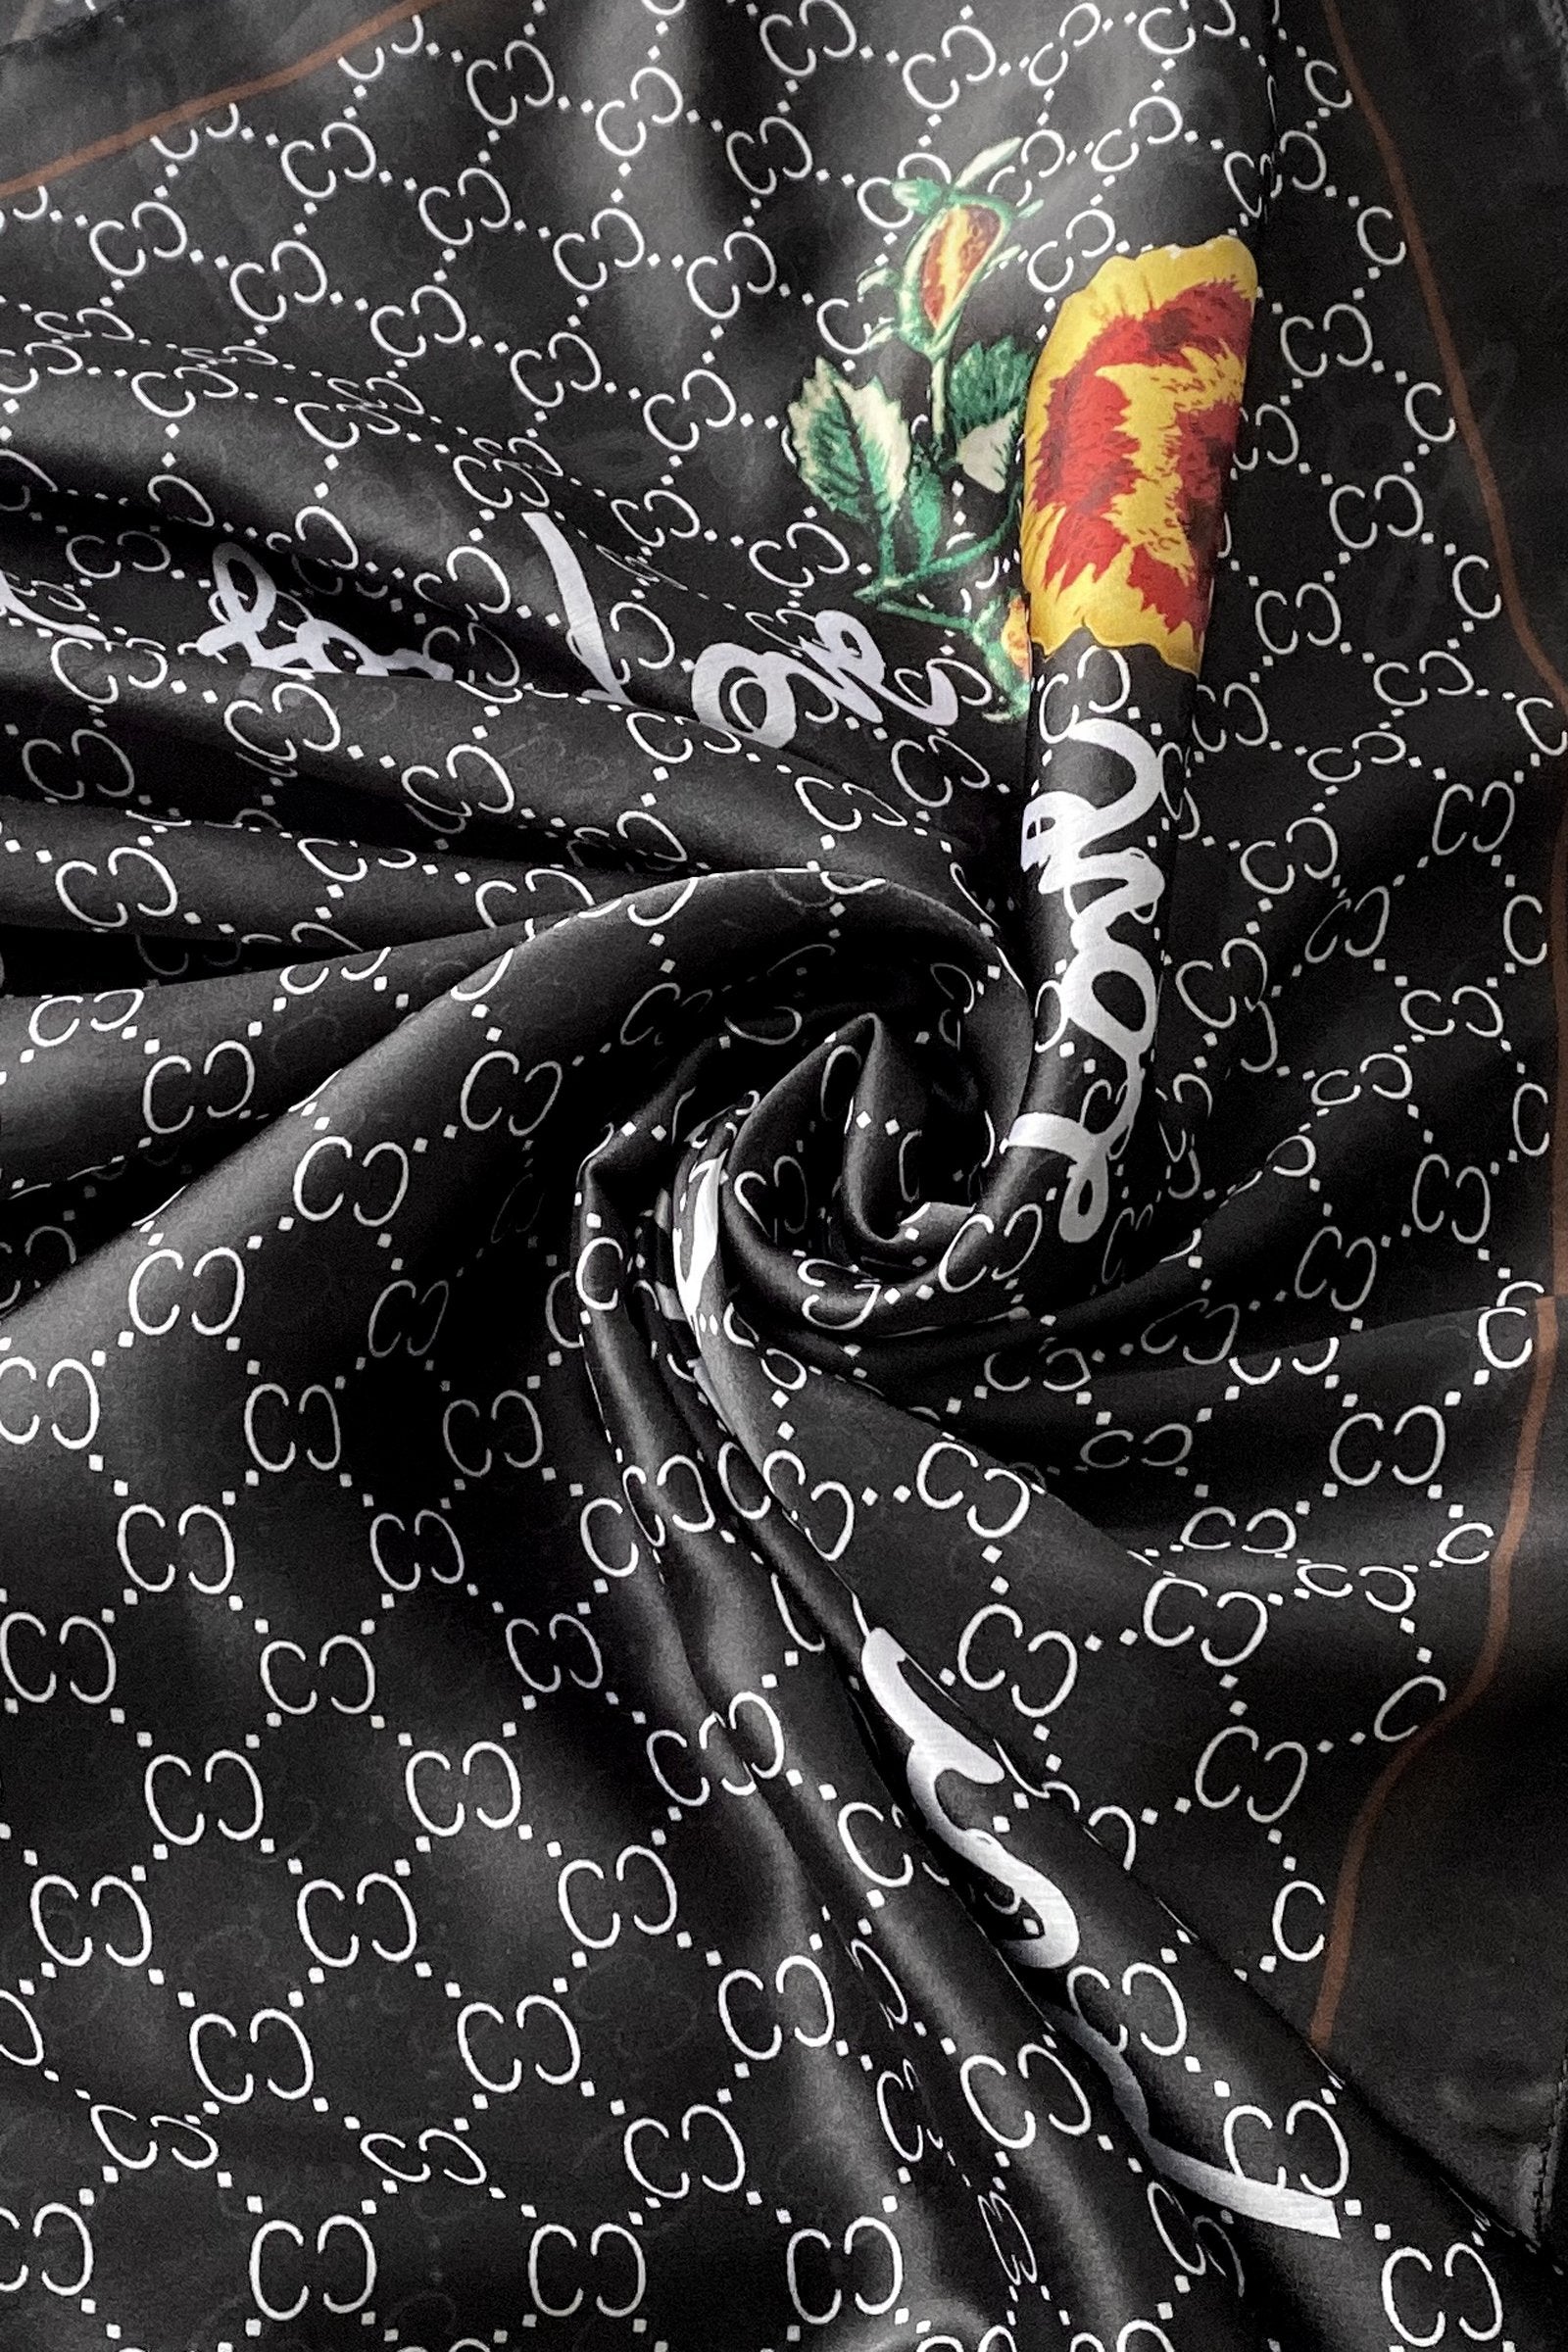 Hedvábná šála-šátek, 90 cm x 180 cm, s ozdobným textem, černá | -80% Akce na Šperky